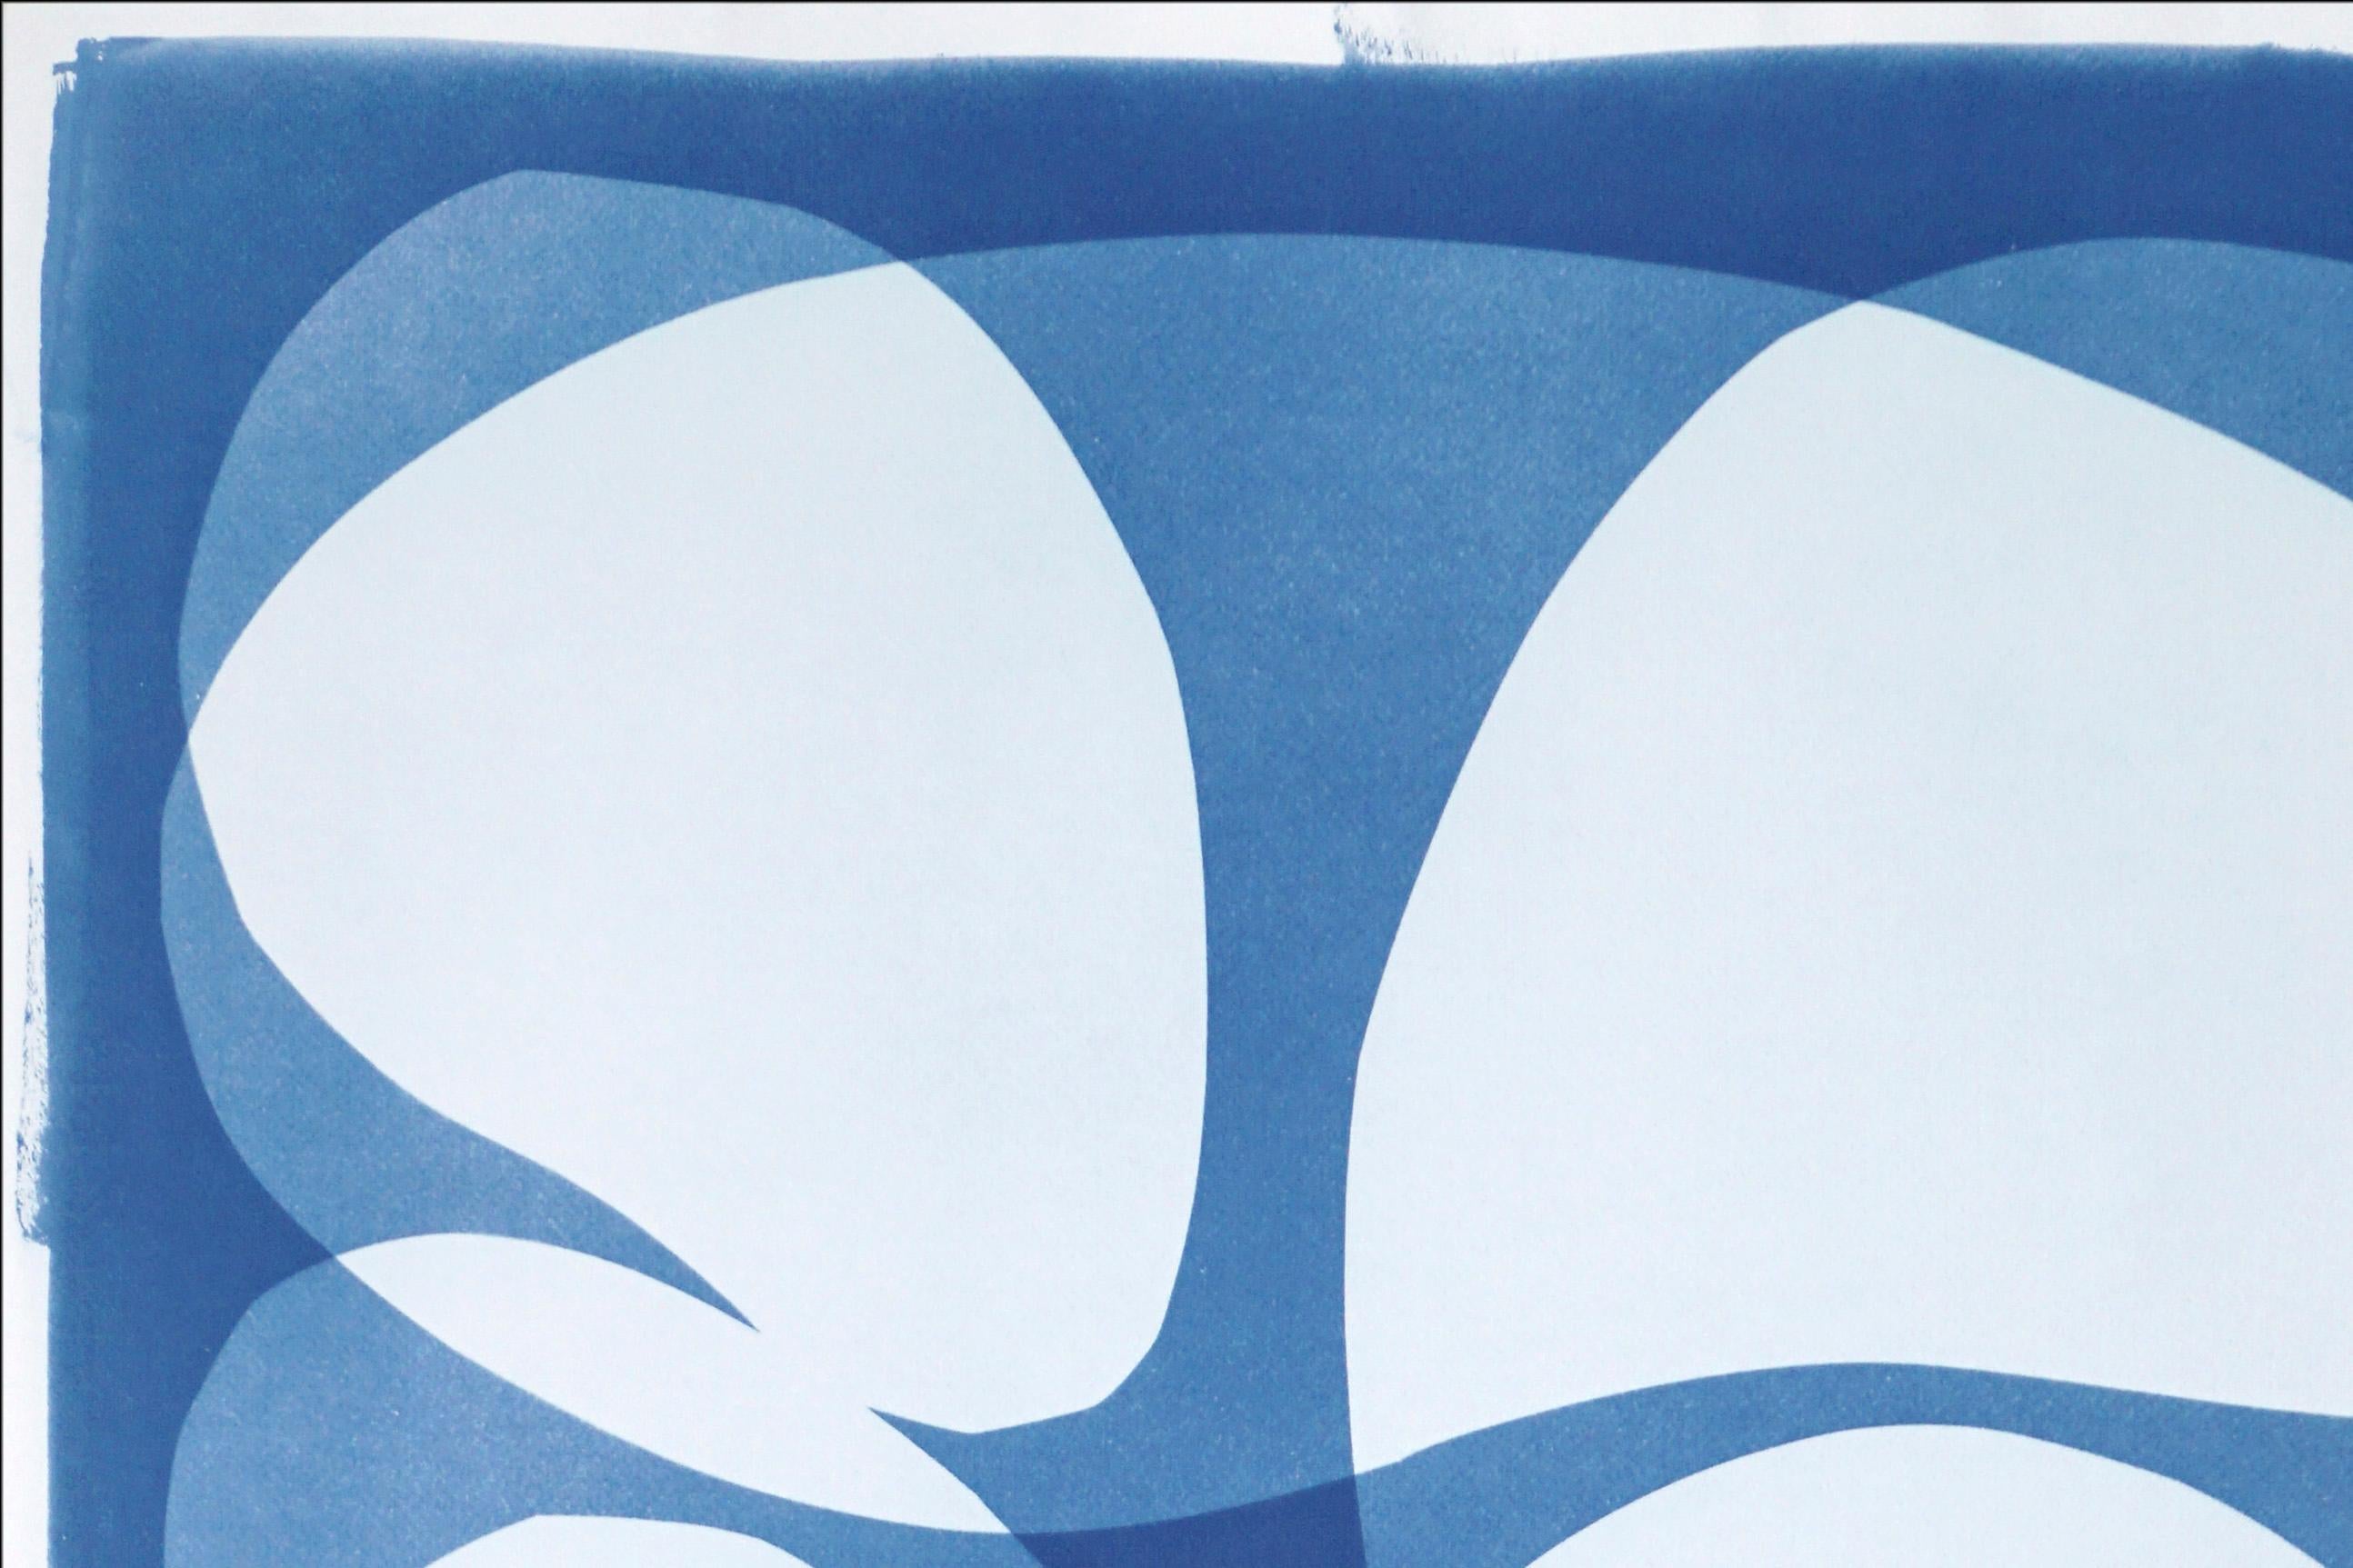 Il s'agit d'un cyanotype unique exclusif, imprimé à la main, qui s'inspire des formes modernes du milieu du siècle dernier.
Il a été réalisé en superposant des papiers découpés et différentes expositions à la lumière UV. 

Détails :
+ Titre : Résumé